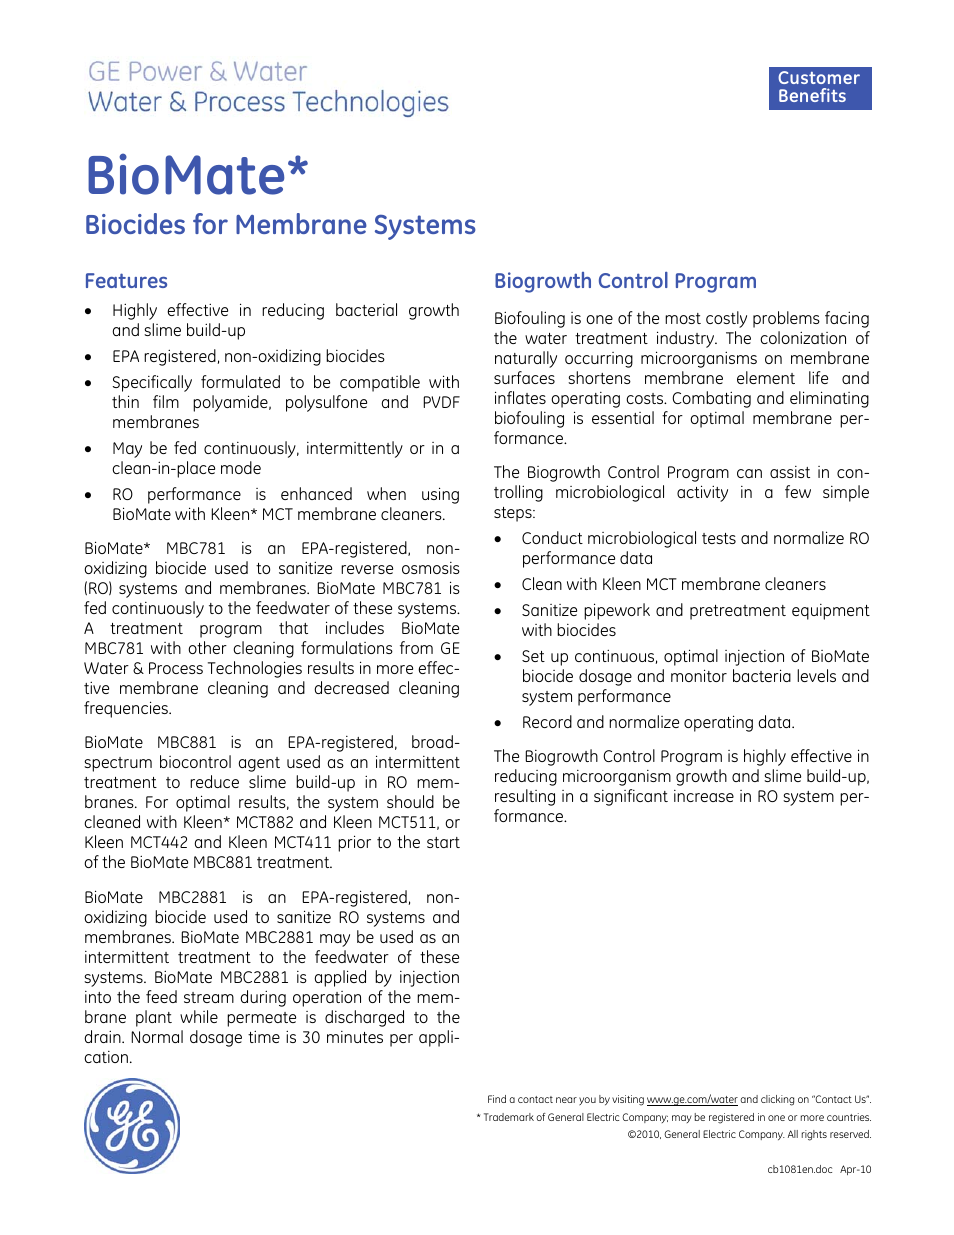 Membrane Chemicals - BioMate